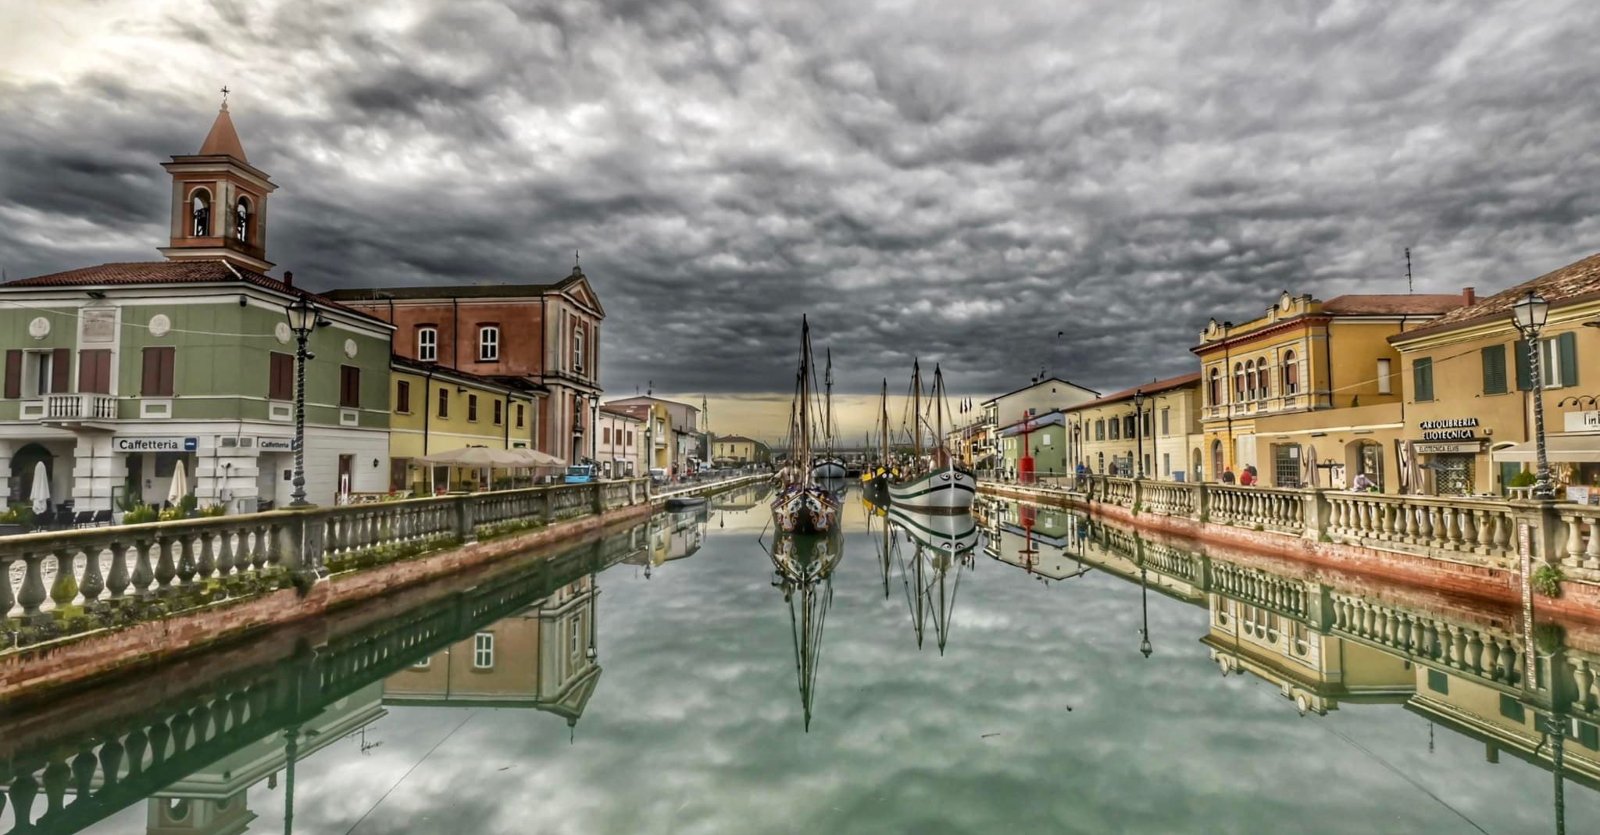 Emilia-Romagna. Hai già ammirato il Porto Canale Leonardesco della città di Cesenatico